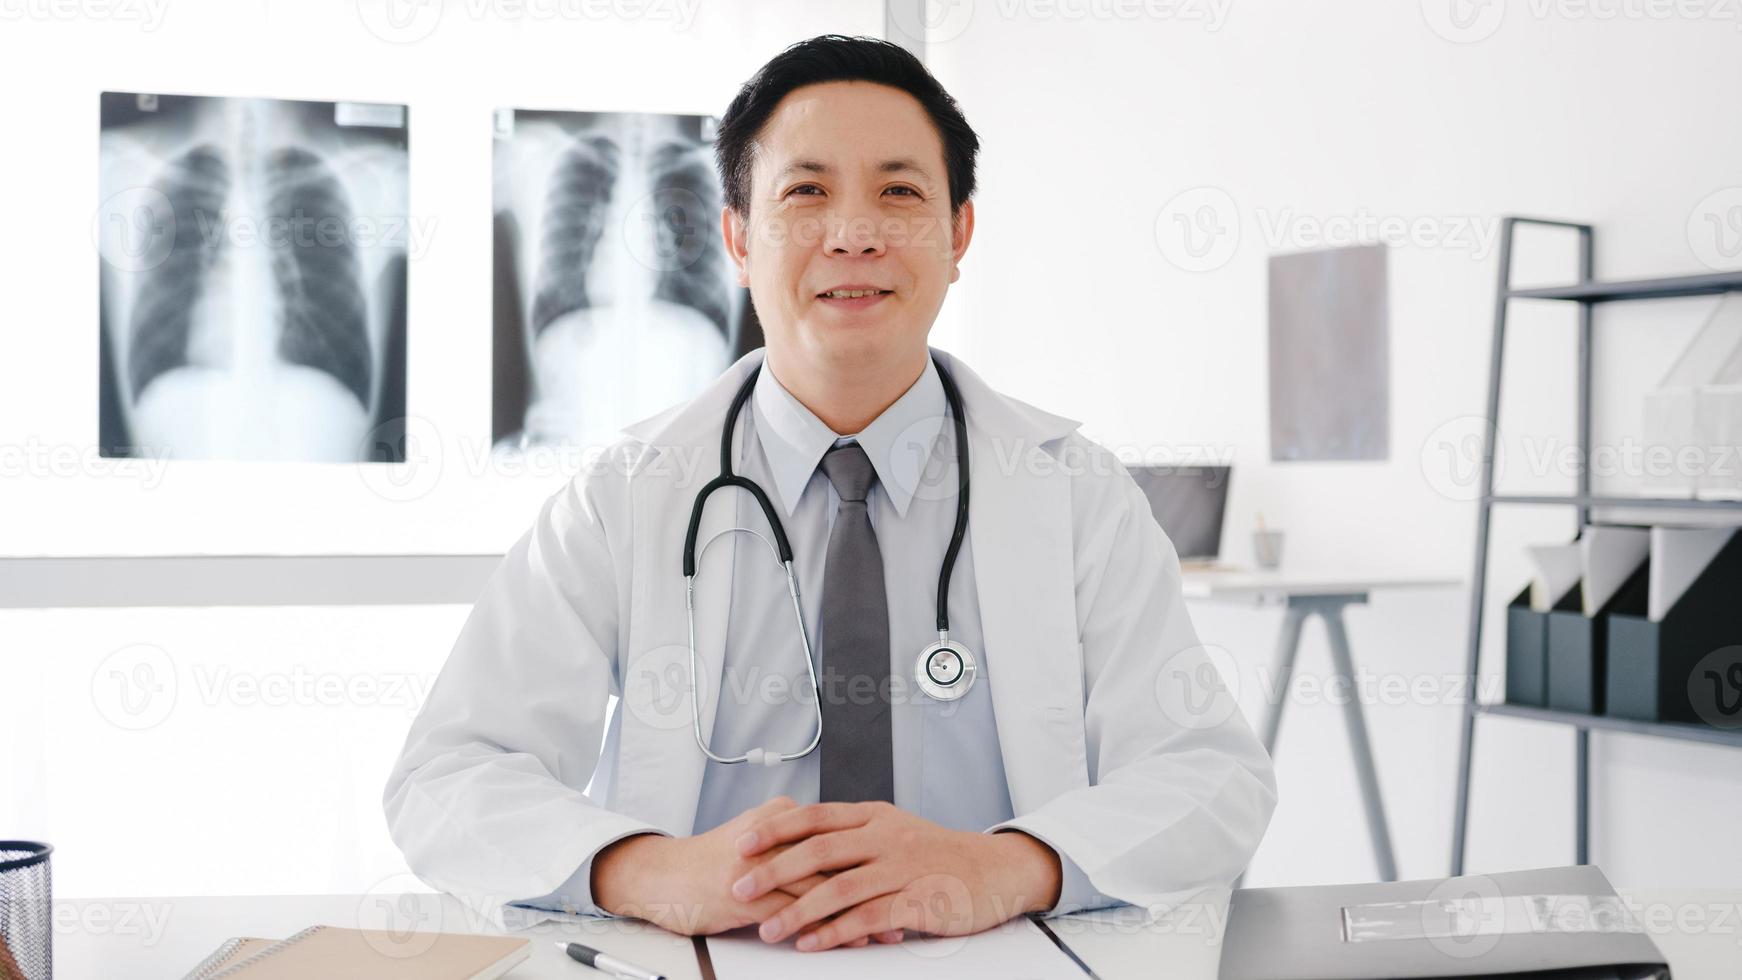 fiducioso giovane medico maschio asiatico in uniforme medica bianca con stetoscopio che guarda l'obbiettivo e sorride durante la videoconferenza con il paziente in ospedale. concetto di consulenza e terapia. foto